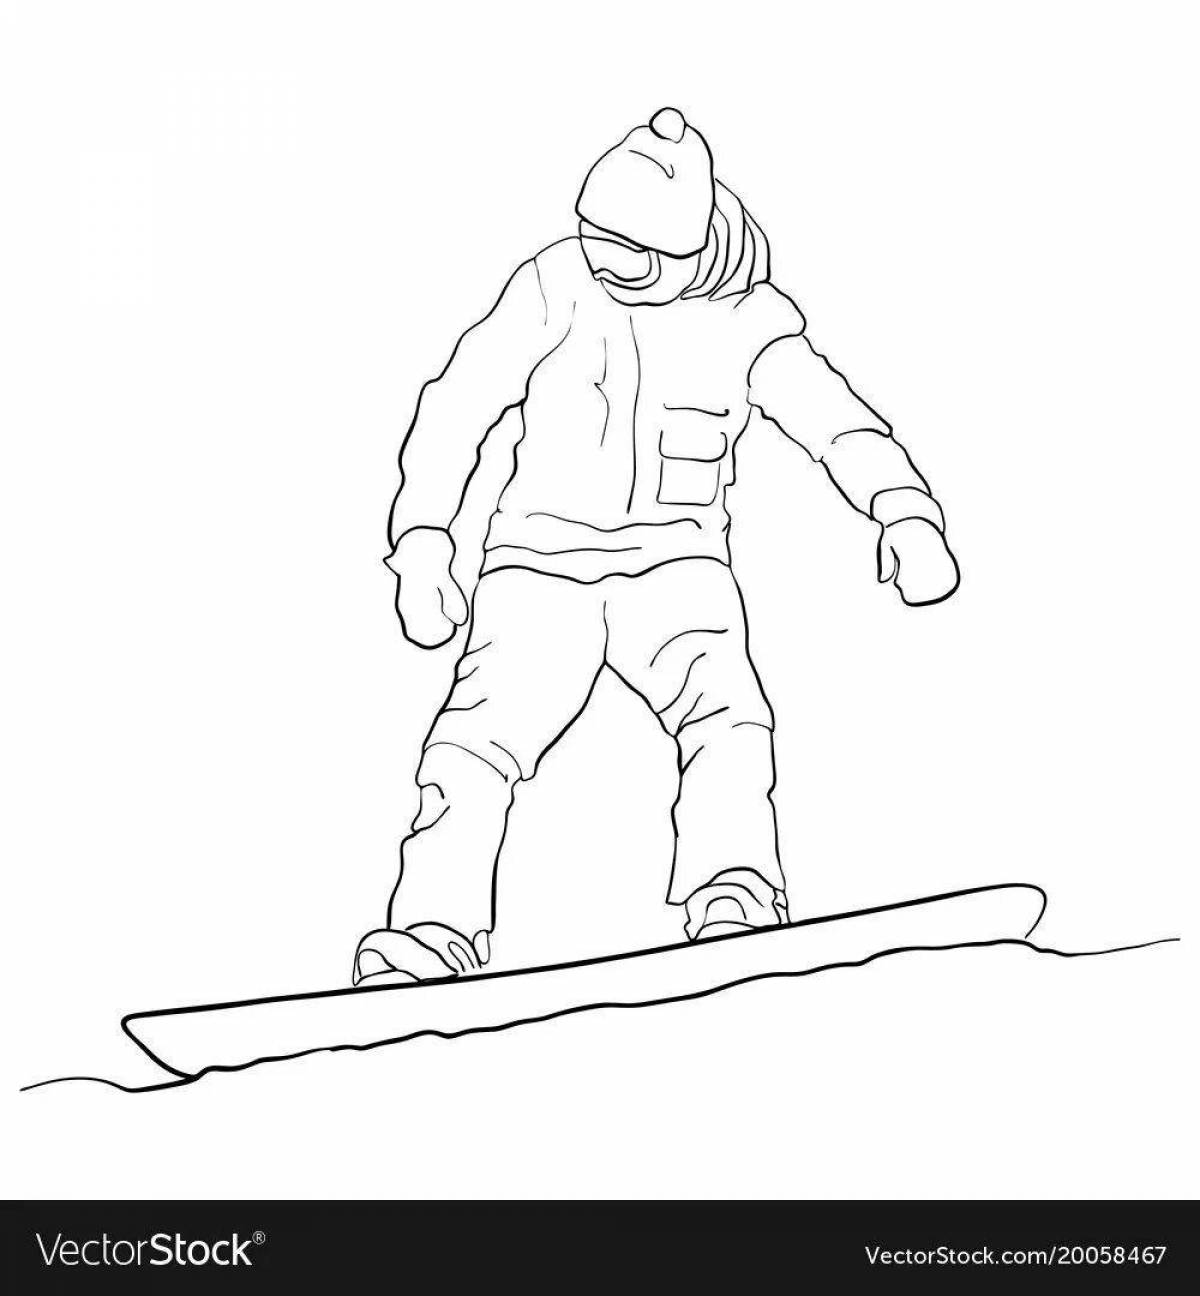 Раскраска радостный сноубордист для детей